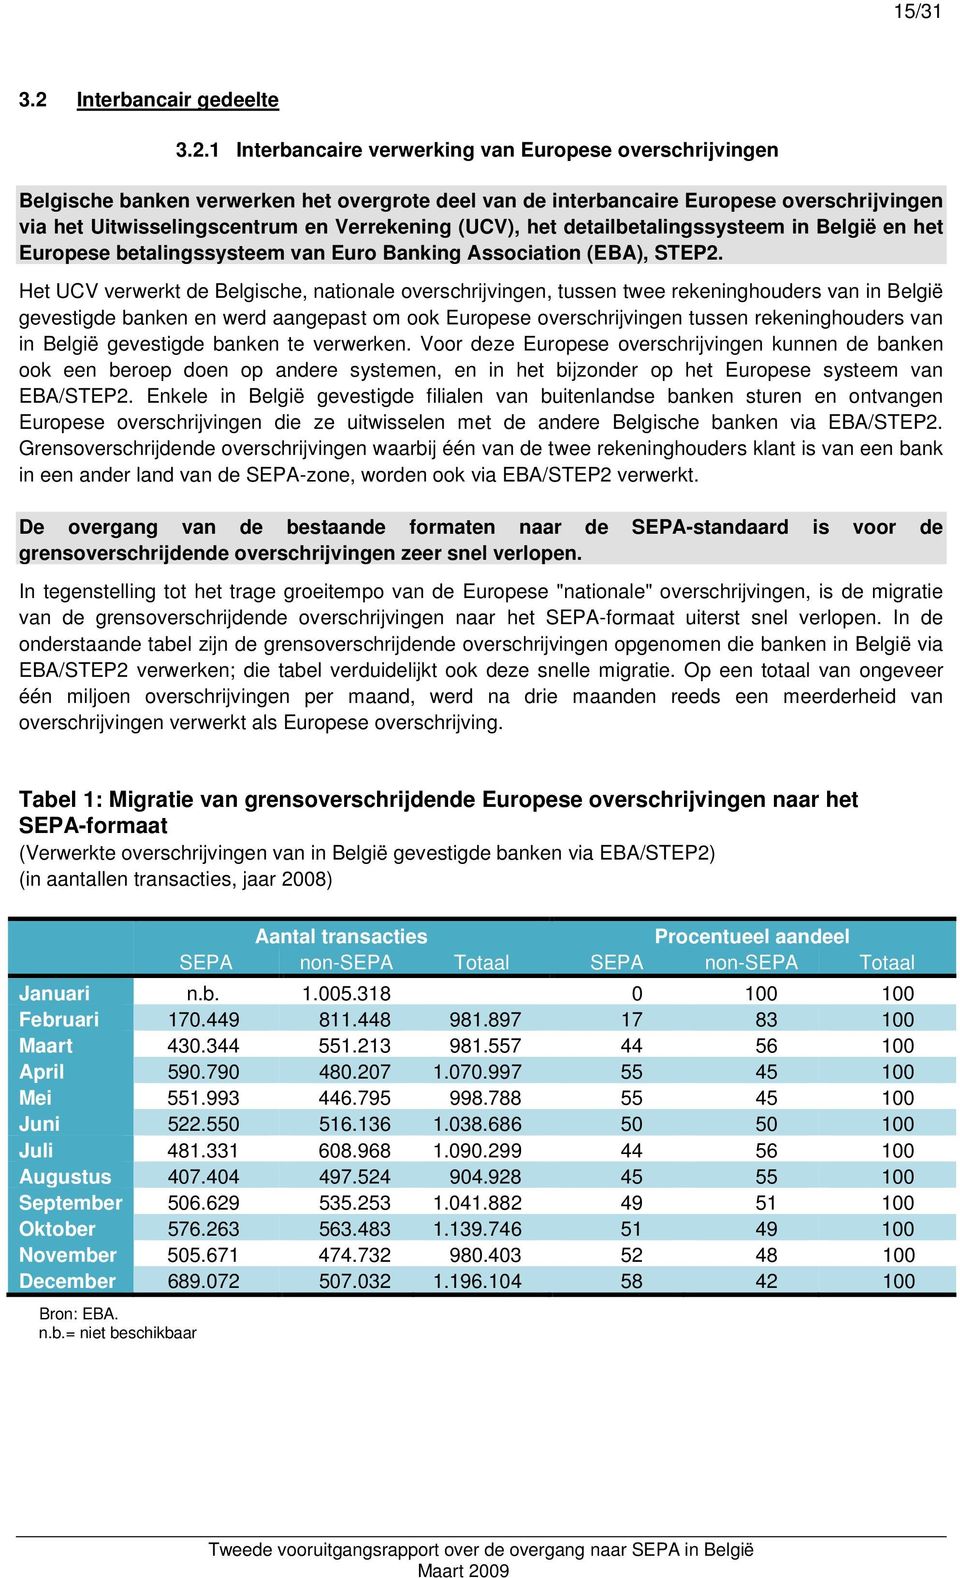 1 Interbancaire verwerking van Europese overschrijvingen Belgische banken verwerken het overgrote deel van de interbancaire Europese overschrijvingen via het Uitwisselingscentrum en Verrekening